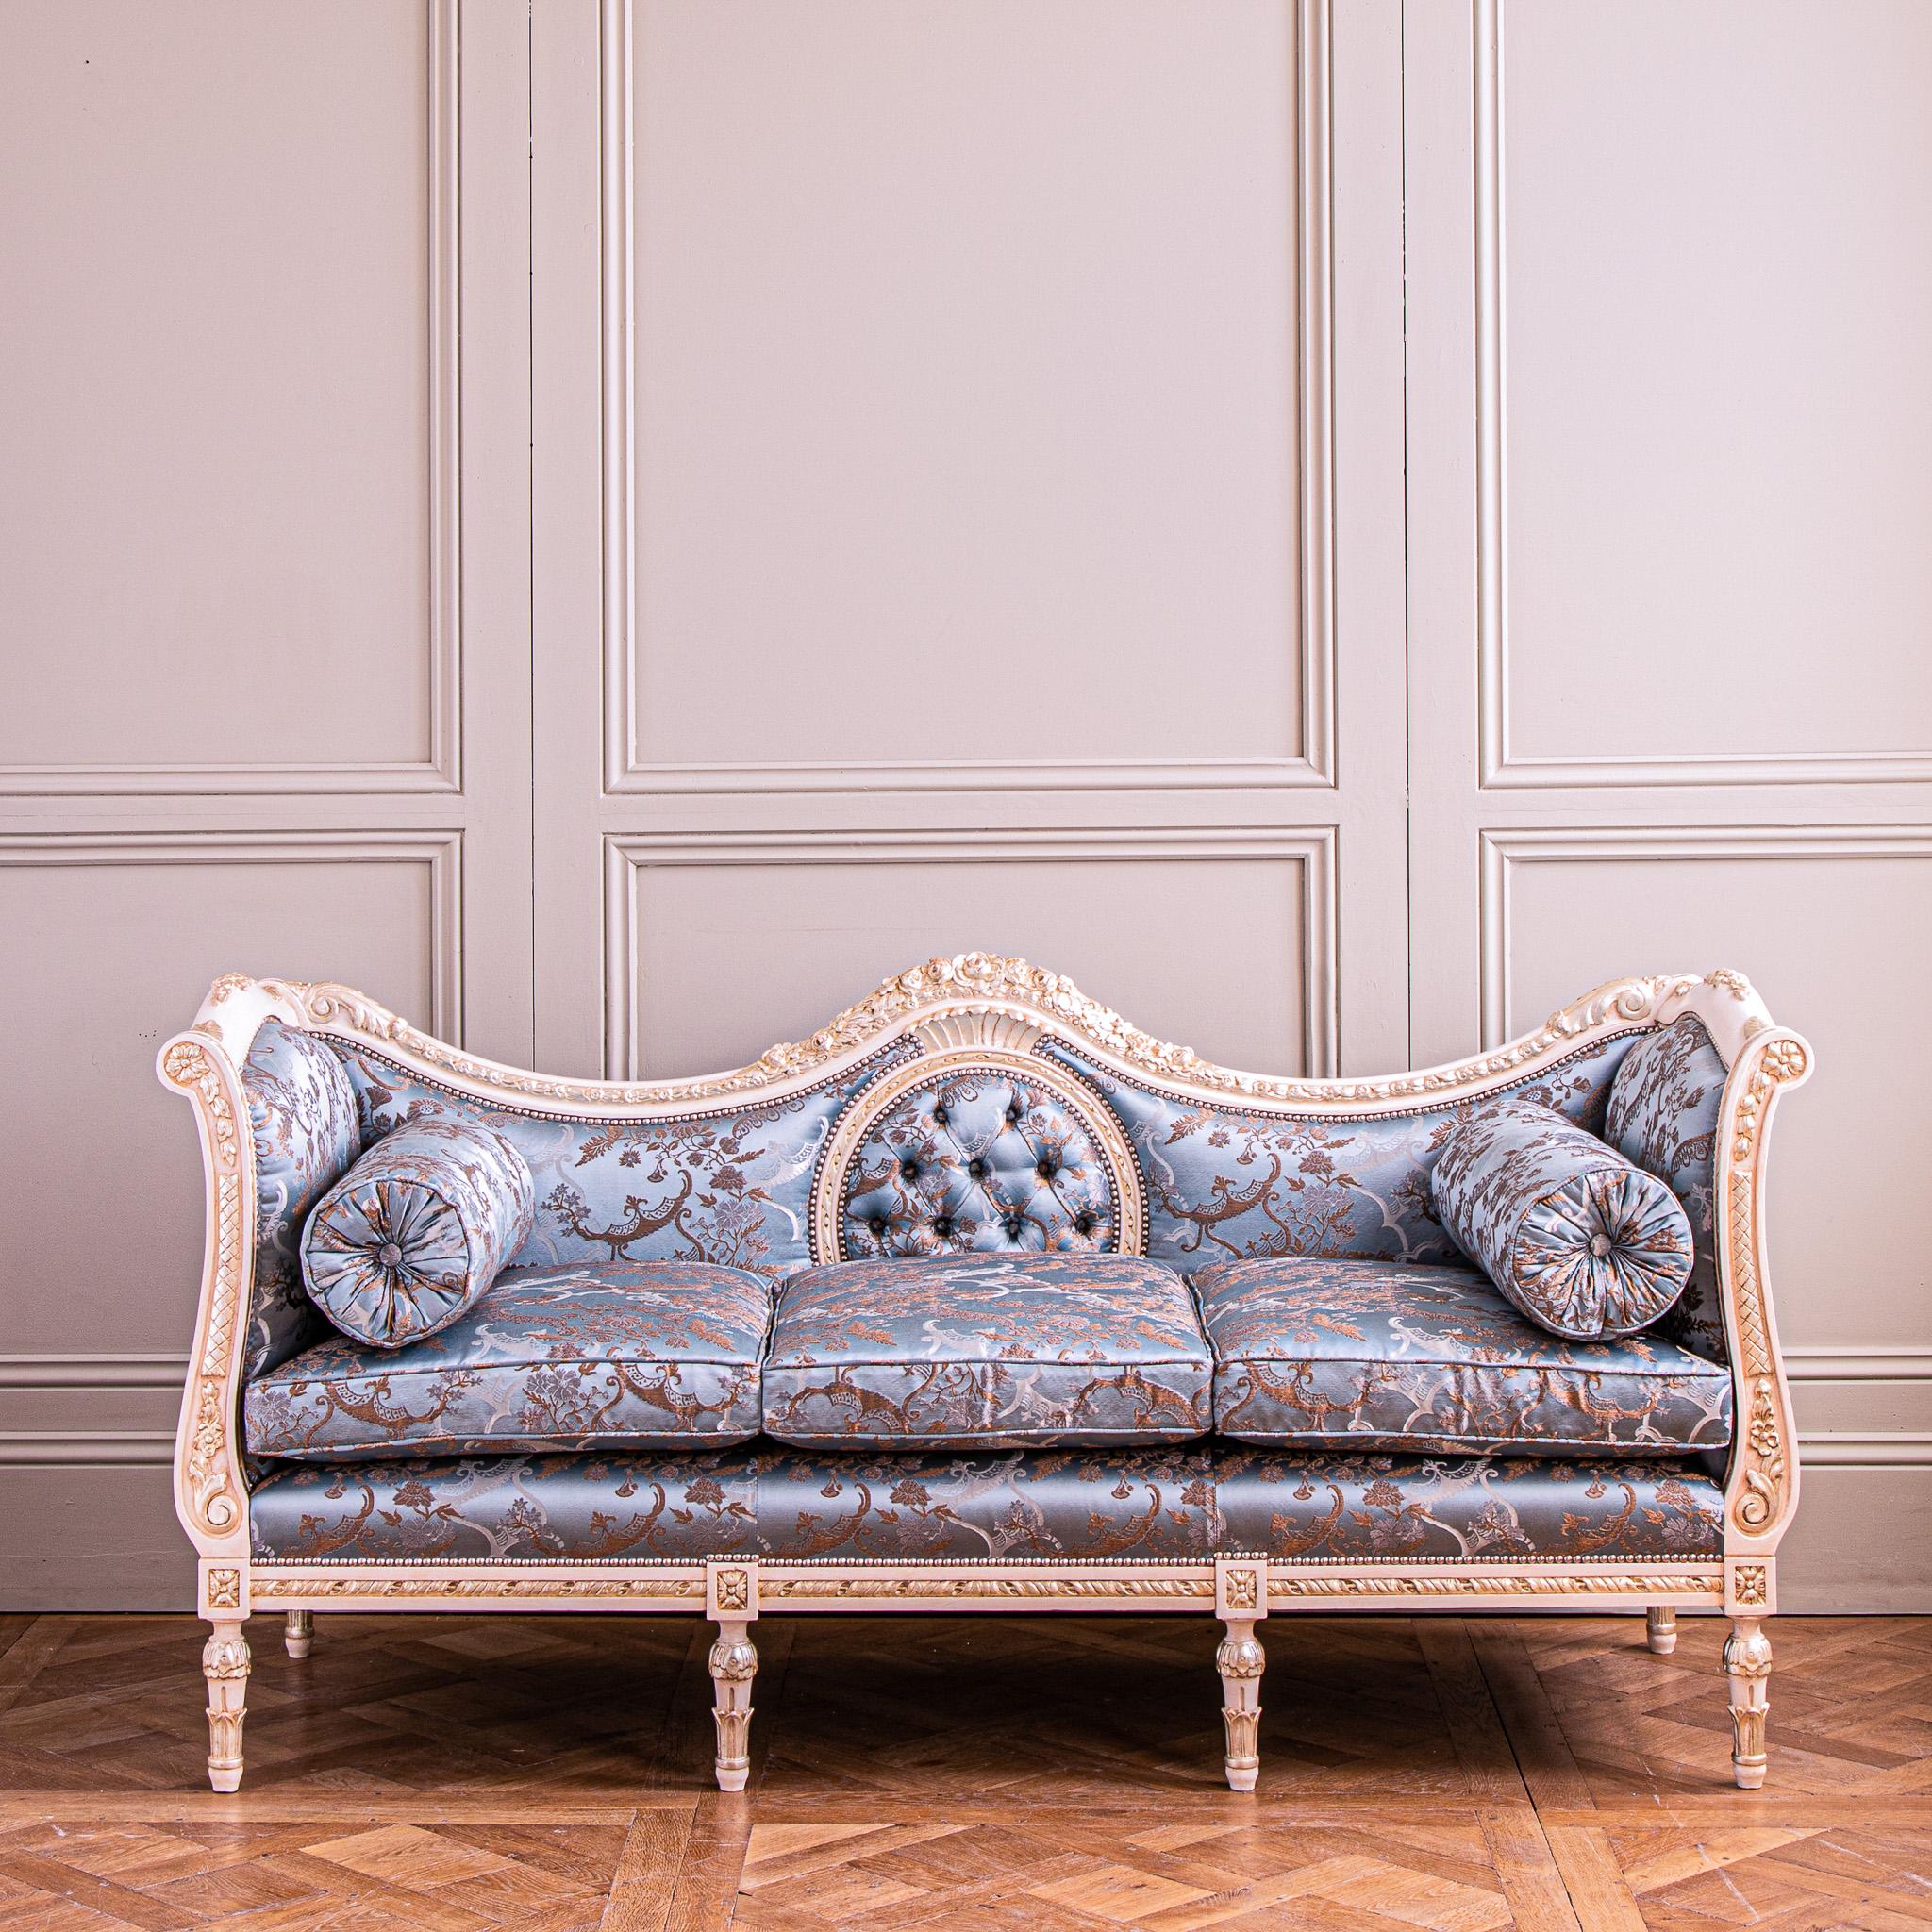 Dieses außergewöhnliche Sofa im Louis XVI-Stil ist aus massivem Lindenholz handgeschnitzt und kann nach Ihren Wünschen gestaltet werden.
Dieses französische Design zeichnet sich durch fein geschnitzte Details aus, darunter: Blumen- und Bandarbeiten